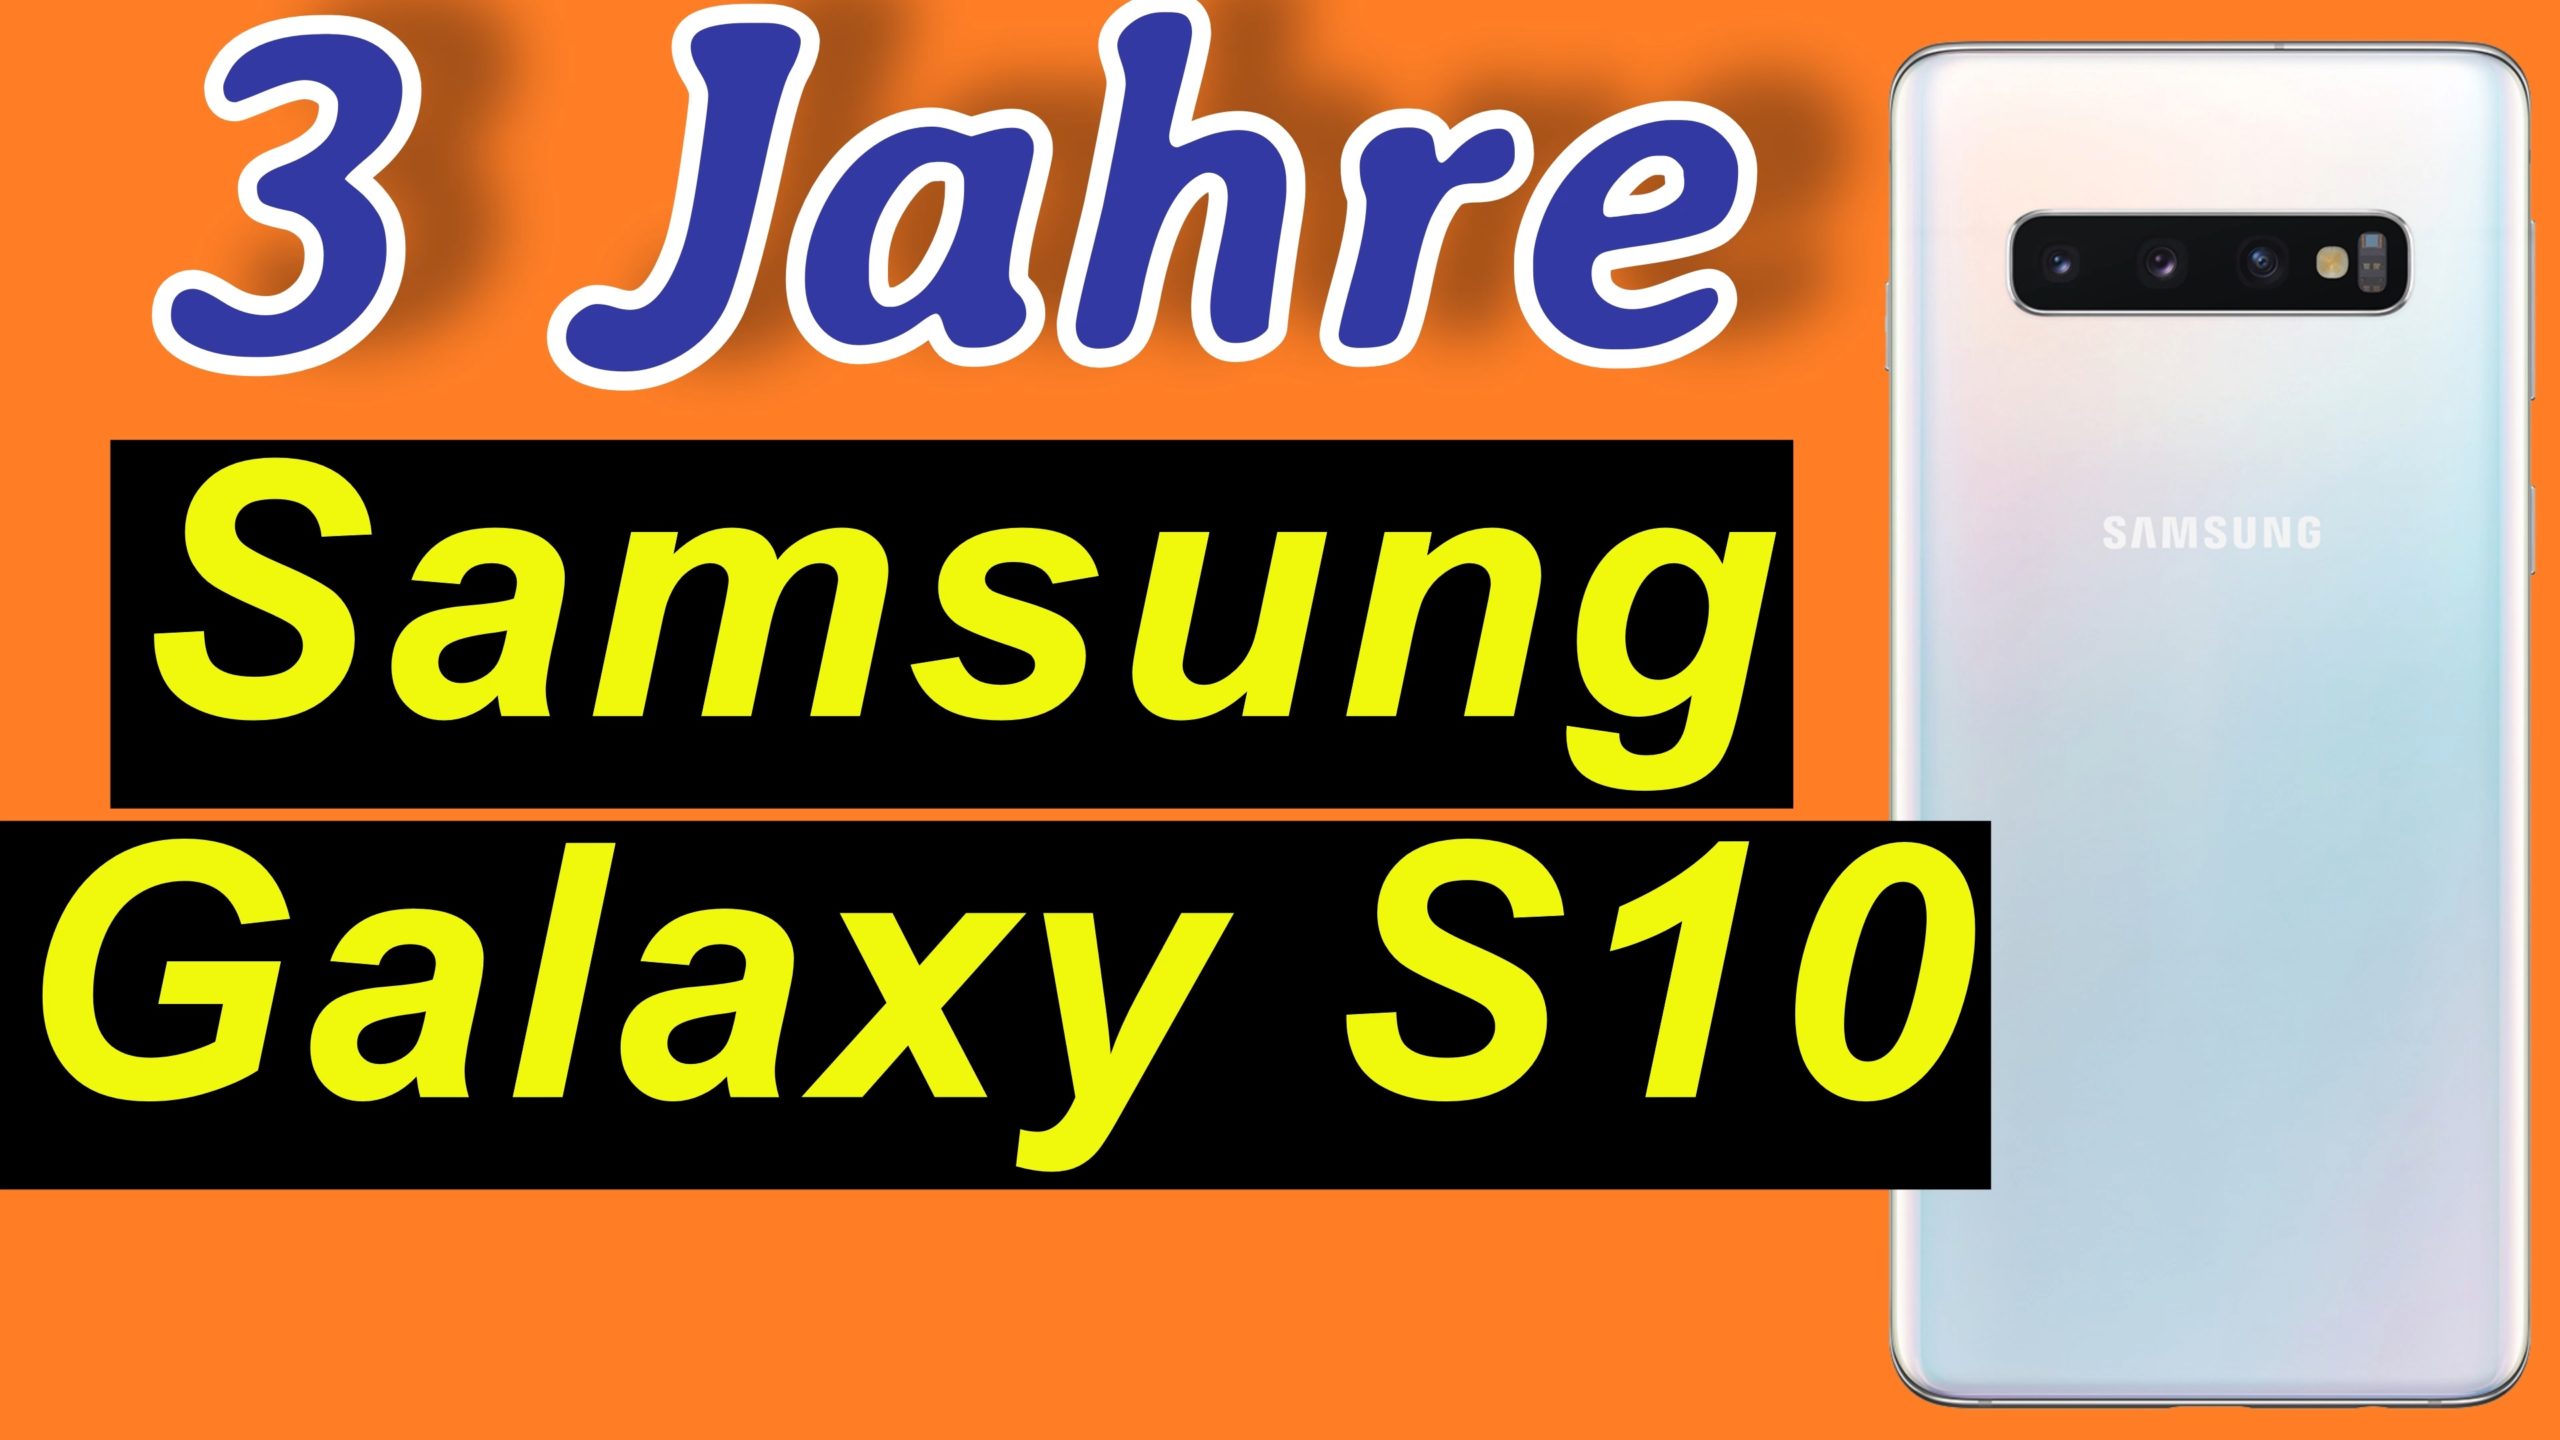 3 Jahre Samsung Galaxy S10. Ultimativer Erfahrungsbericht